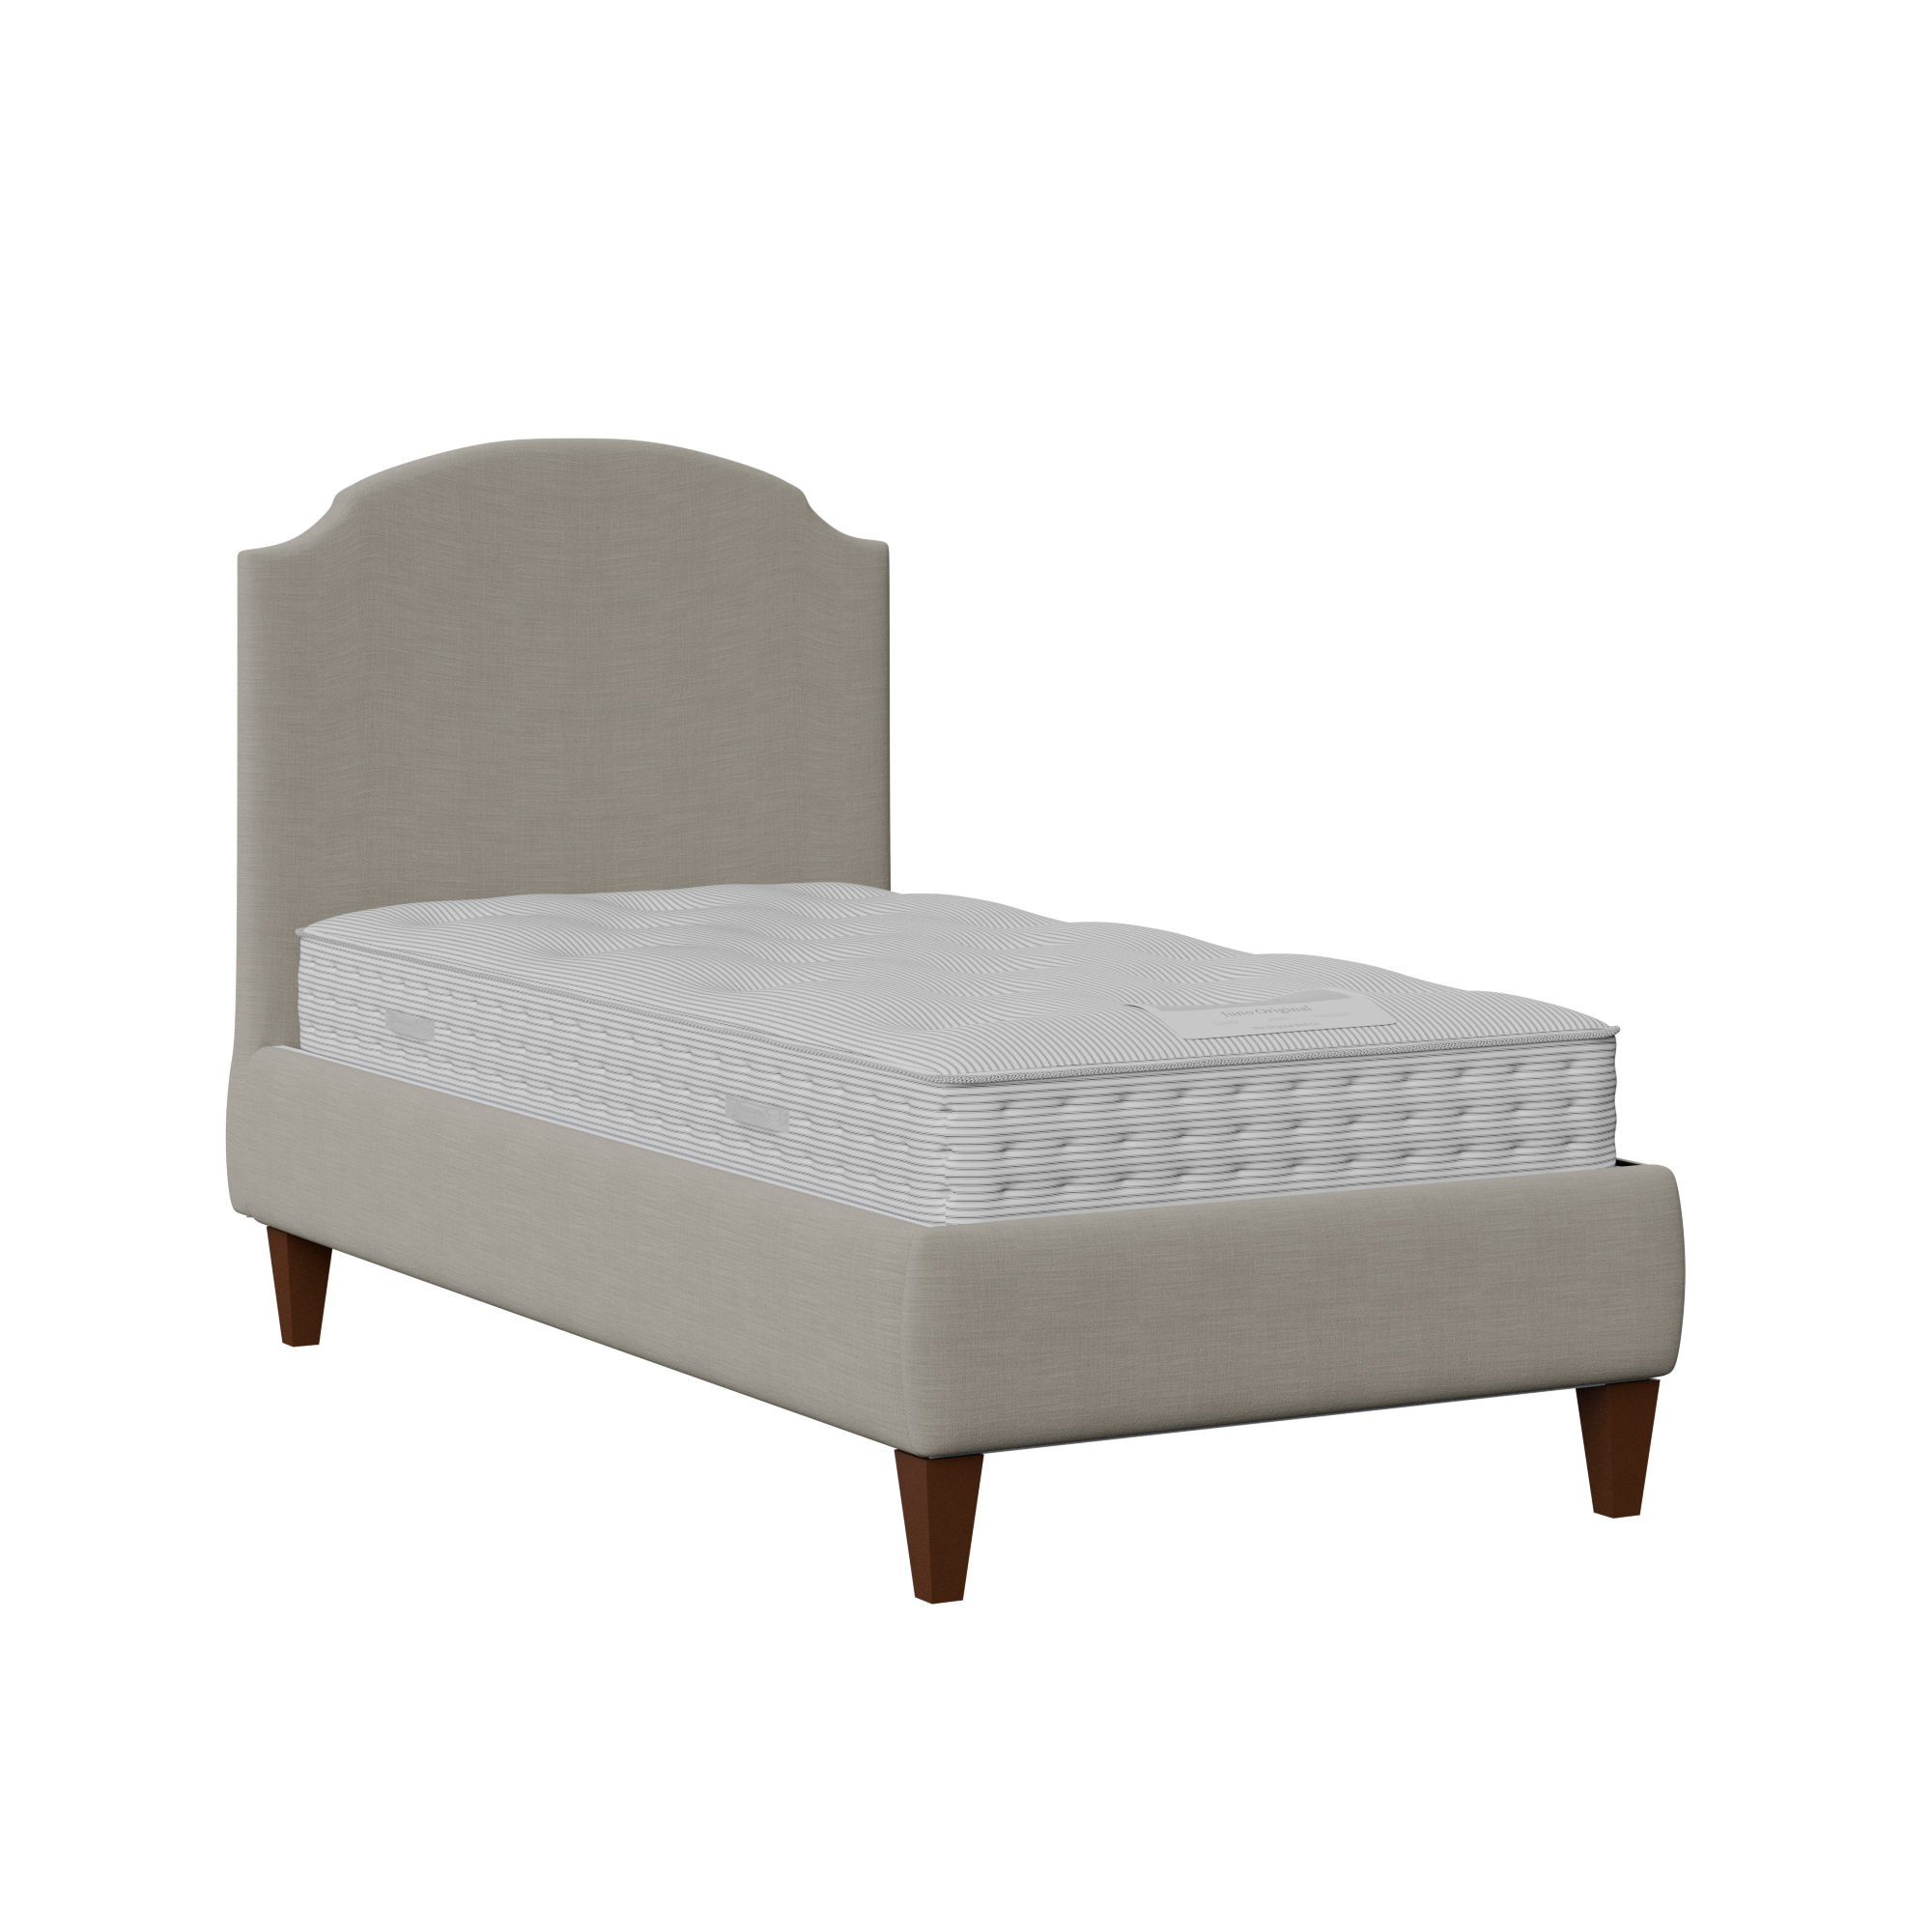 Lide cama individual tapizada en tela gris